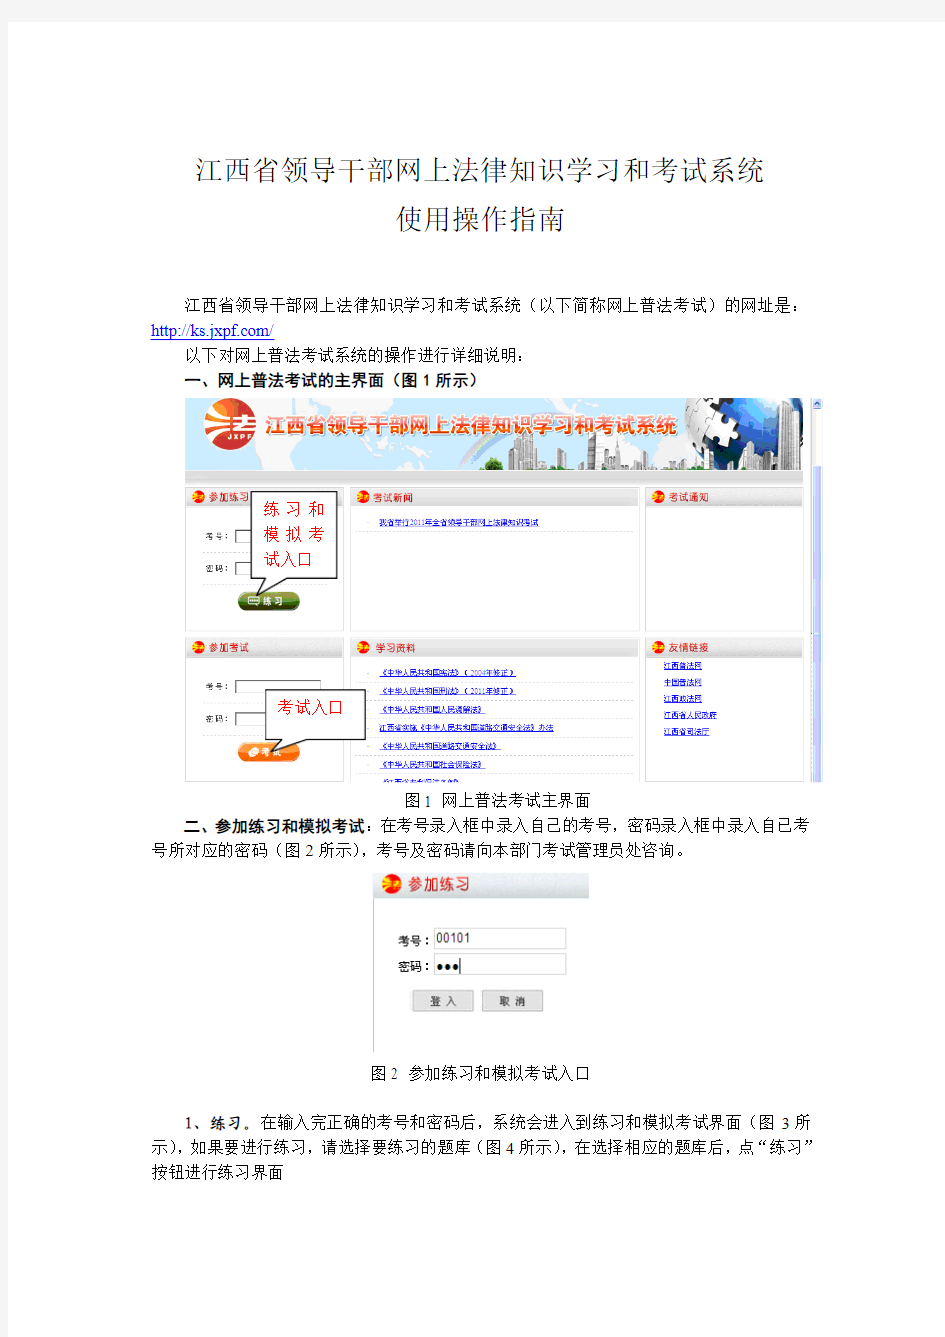 江西省领导干部网上法律知识学习和考试系统操作文档(考生)